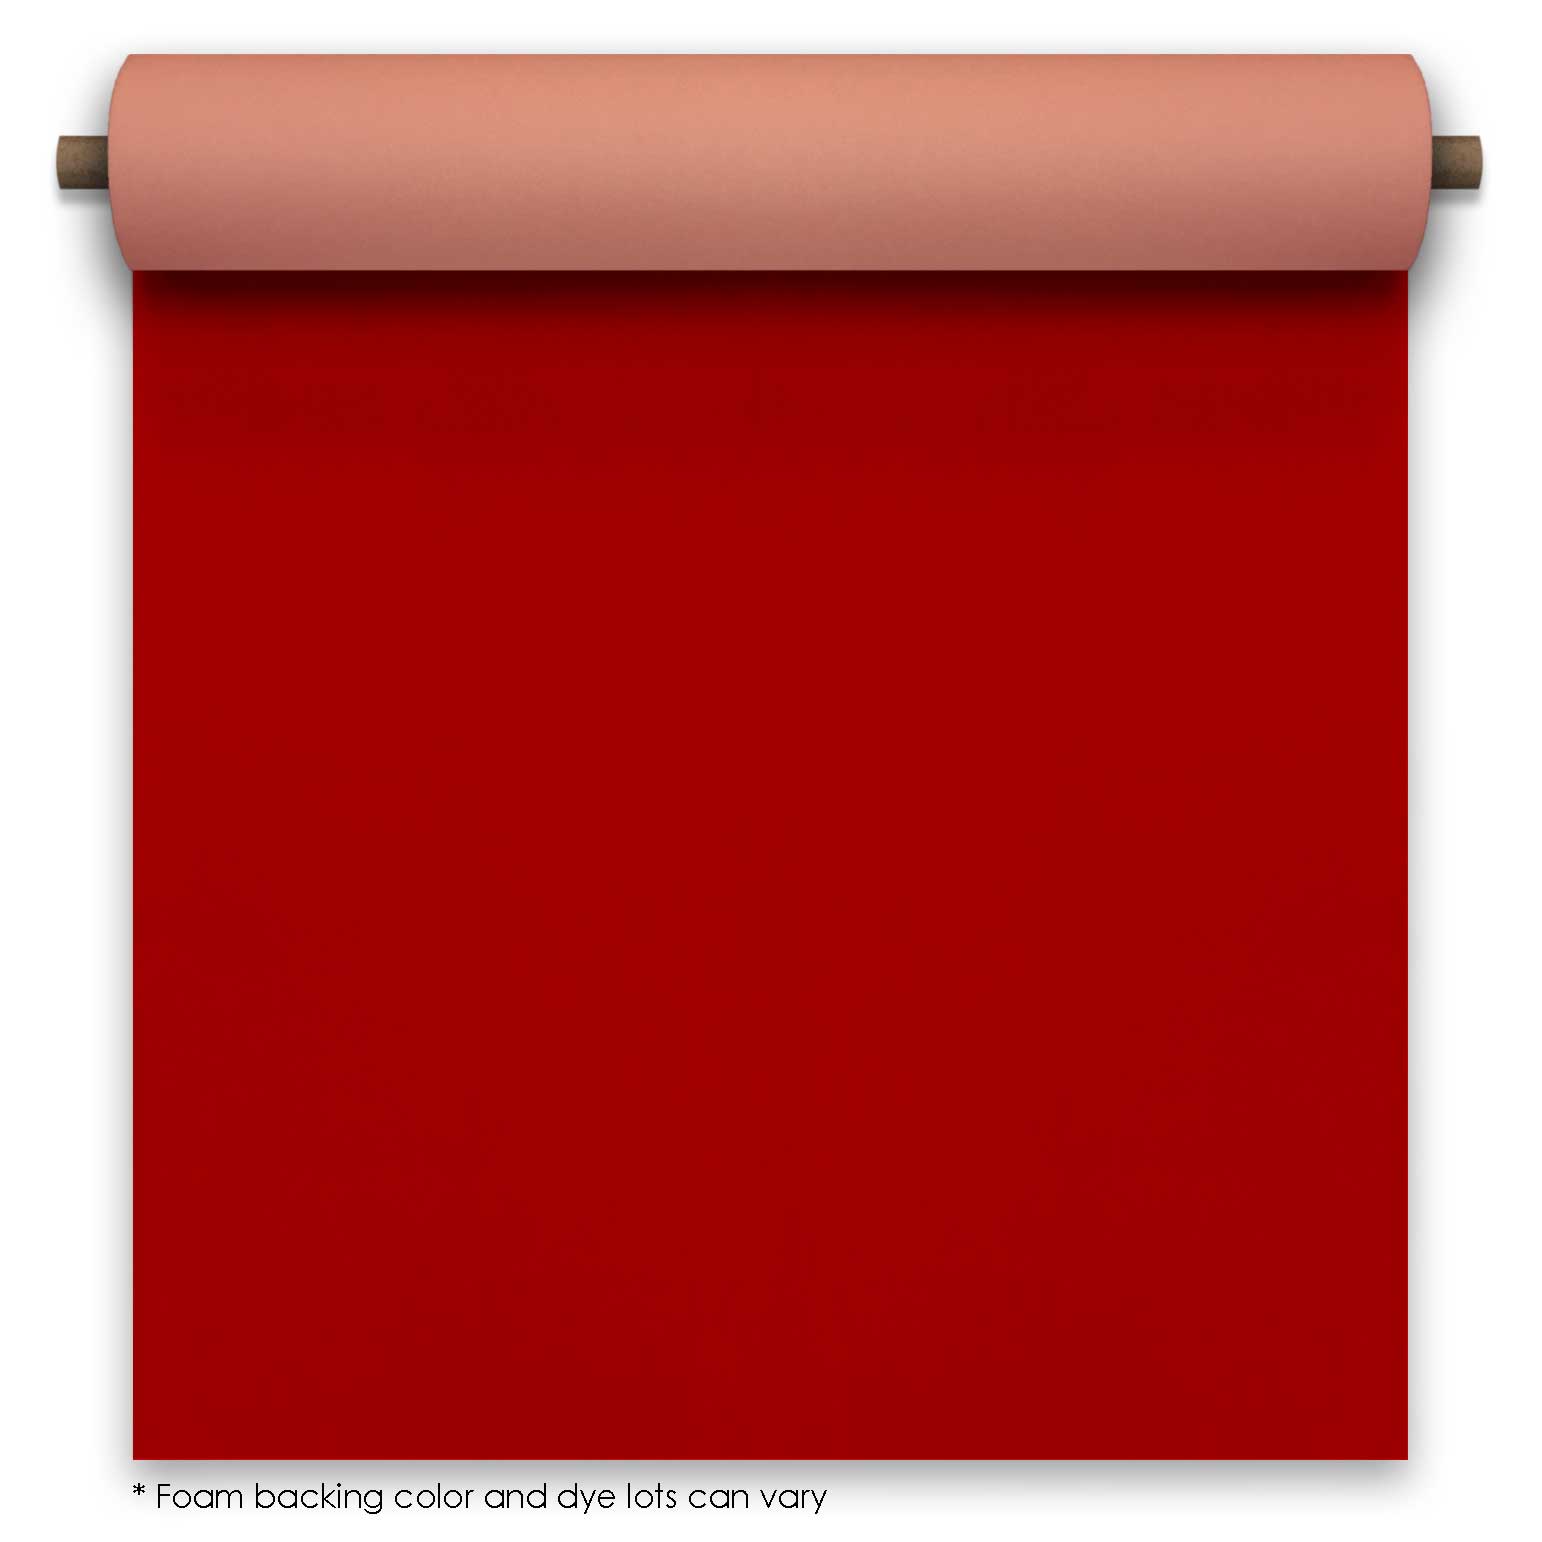 Red non-slip fabric aisle runner 